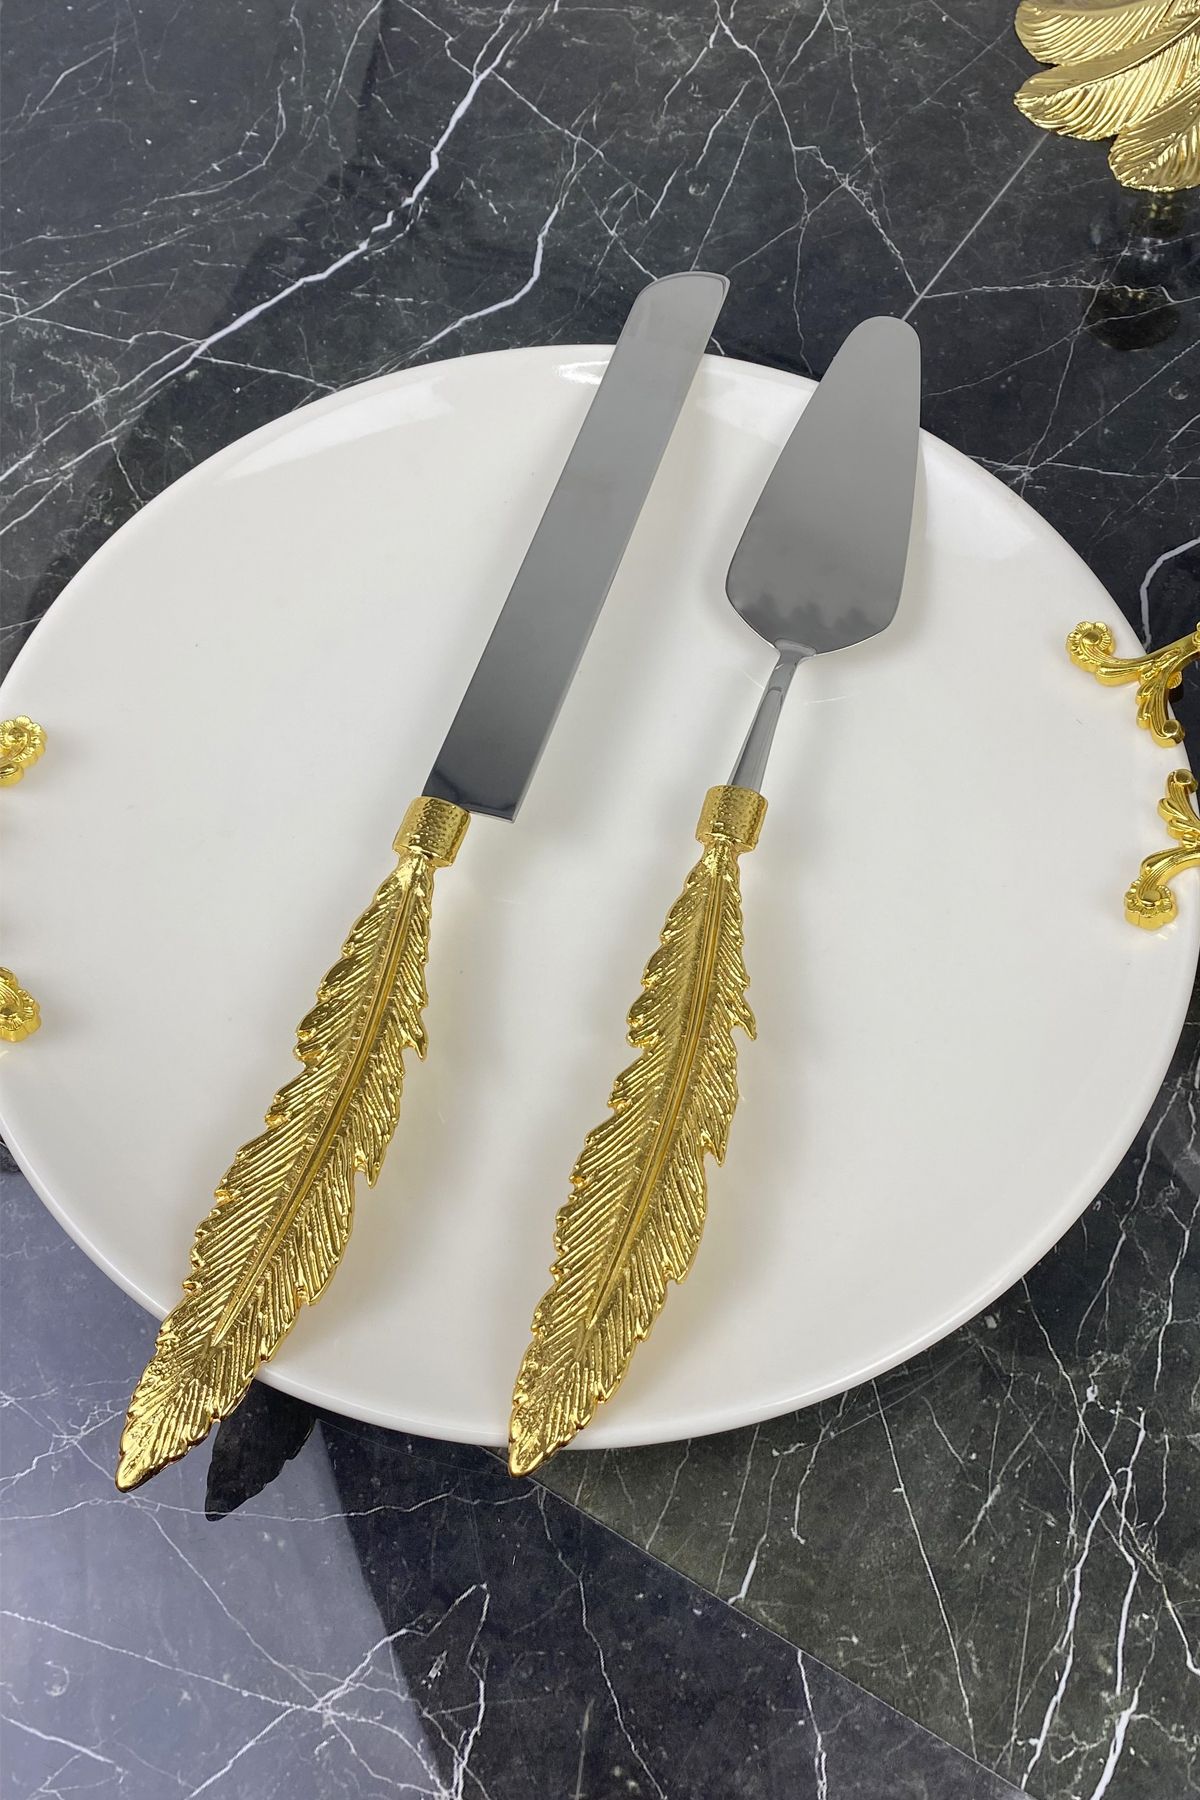 MAY HOME 2 Parça Kand Gold Spatula Bıçak Pasta Servis Seti